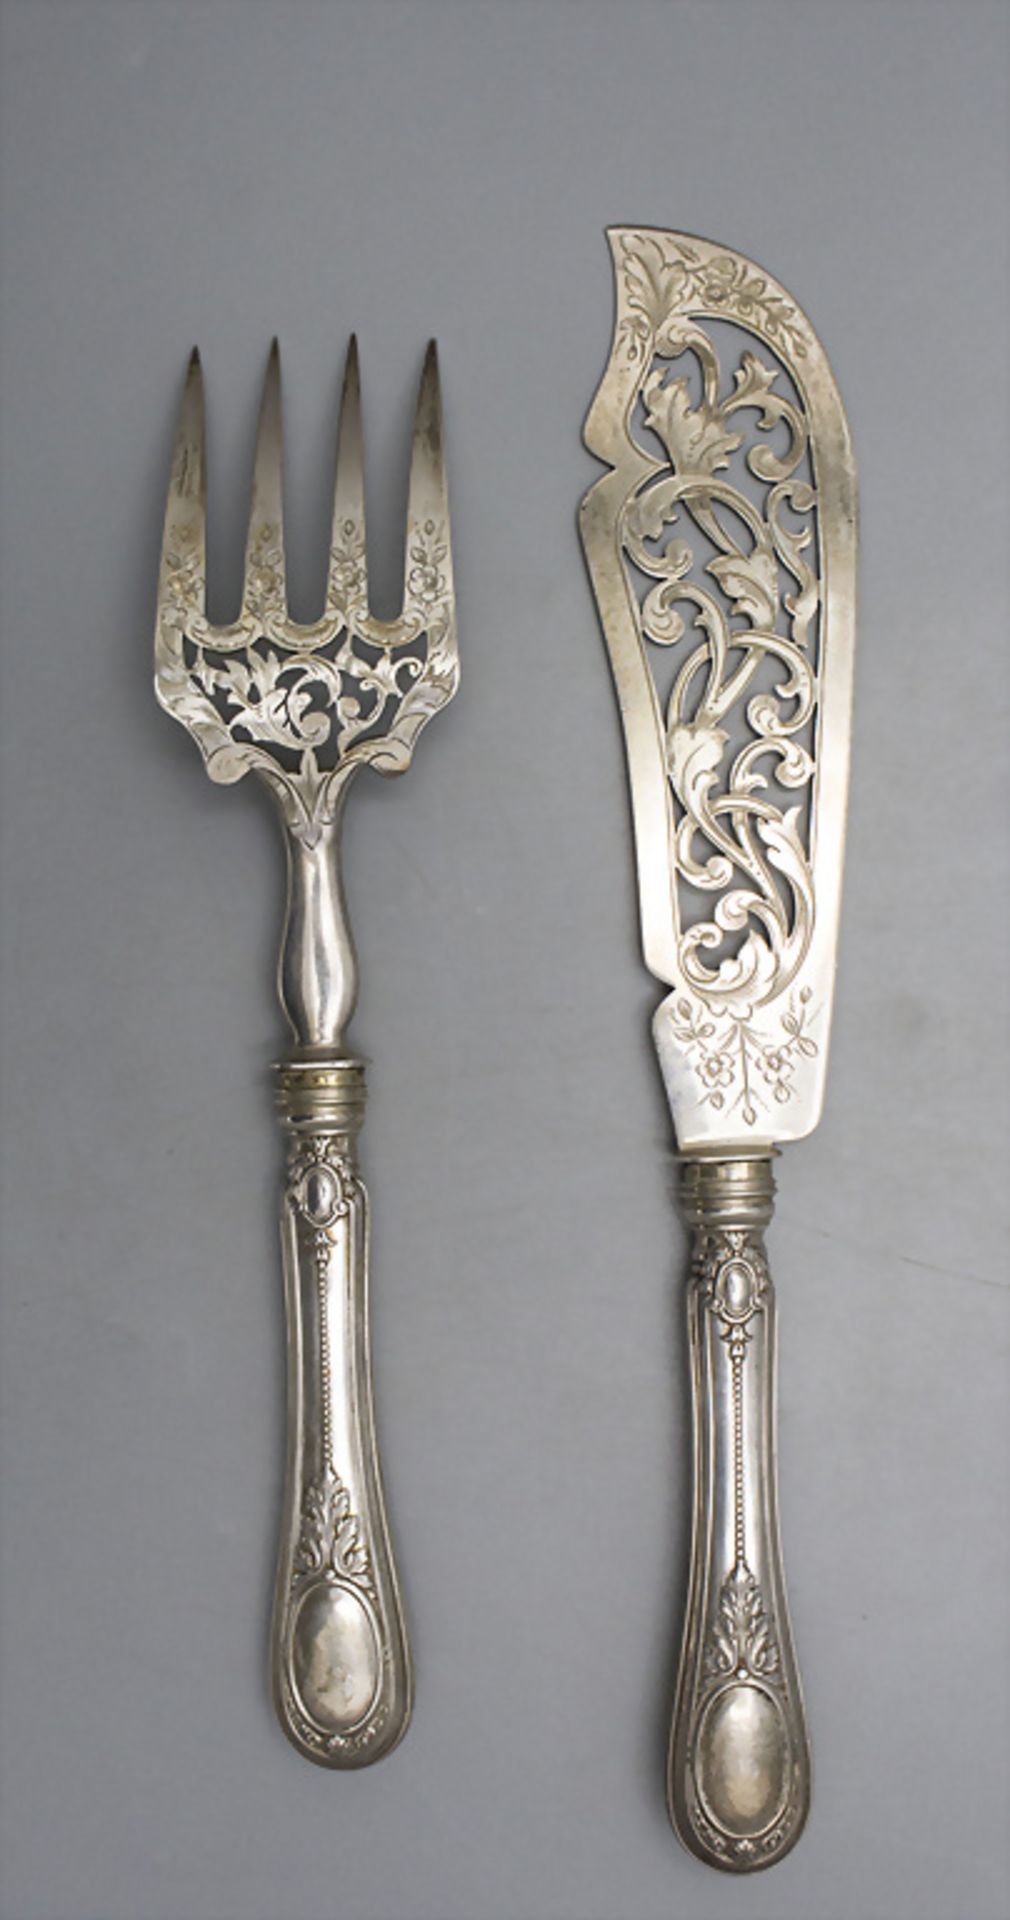 Fisch-Vorlegebesteck / A silver fish serving cutlery, Hènin & Cie., Paris, nach 1896 - Image 4 of 5